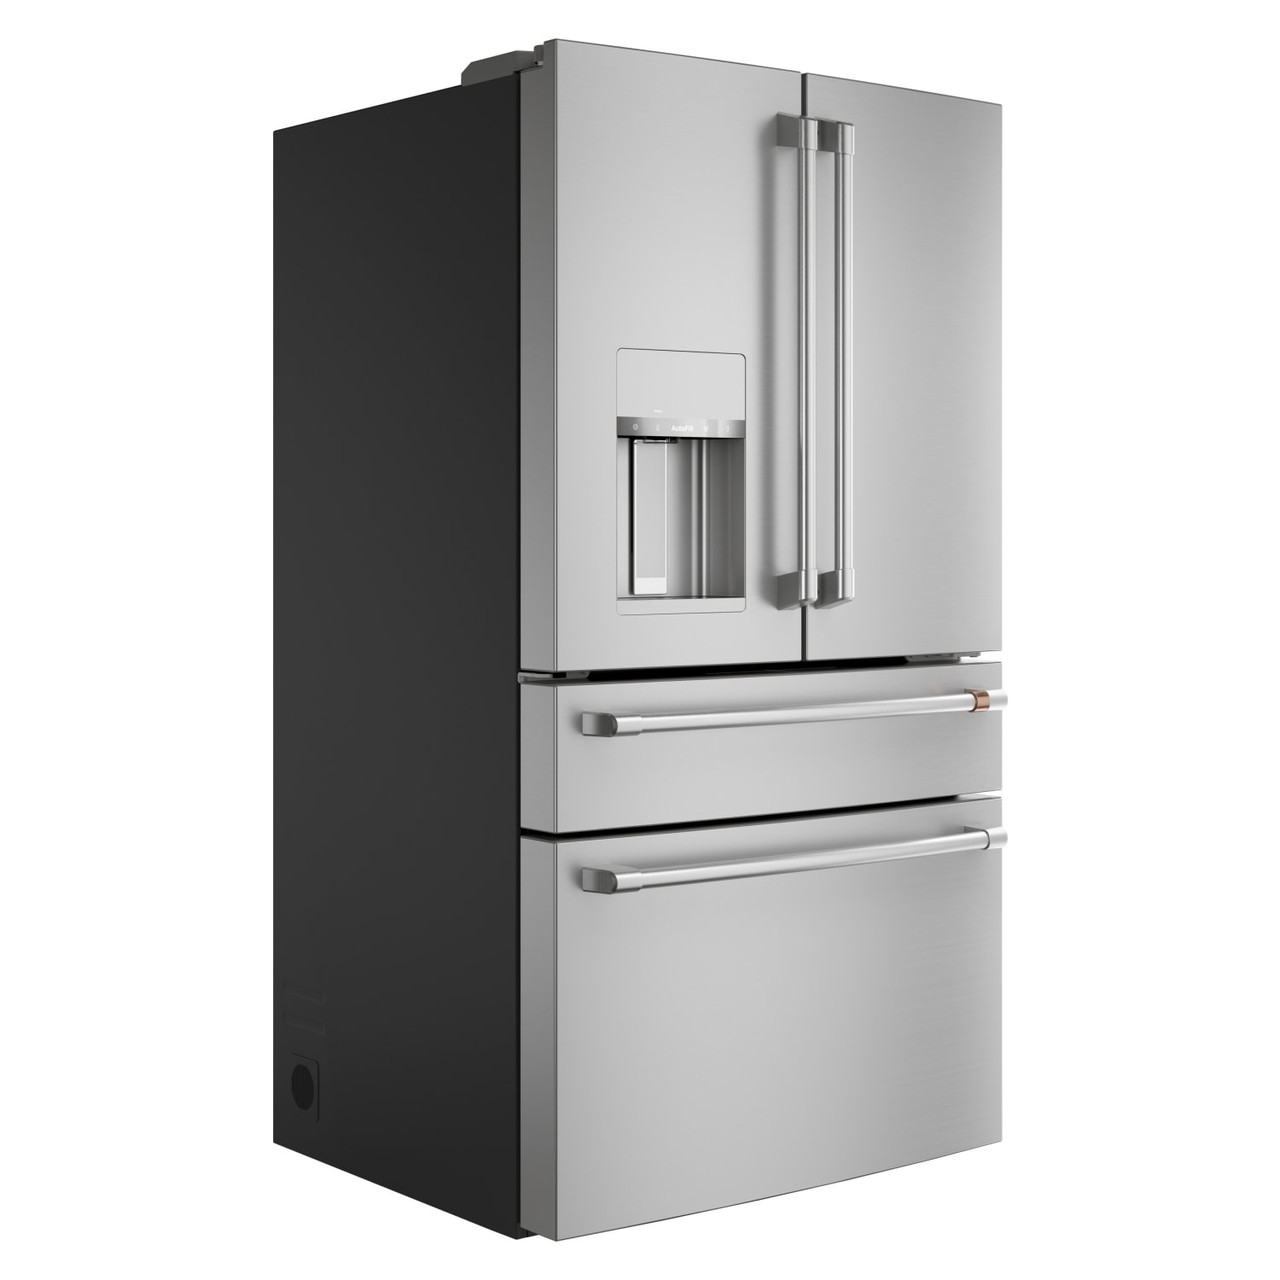 Cafe 27.8 cu. ft. Smart 4-Door French Door Refrigerator in Stainless Steel, ENERGY STAR - CVE28DP2NS1